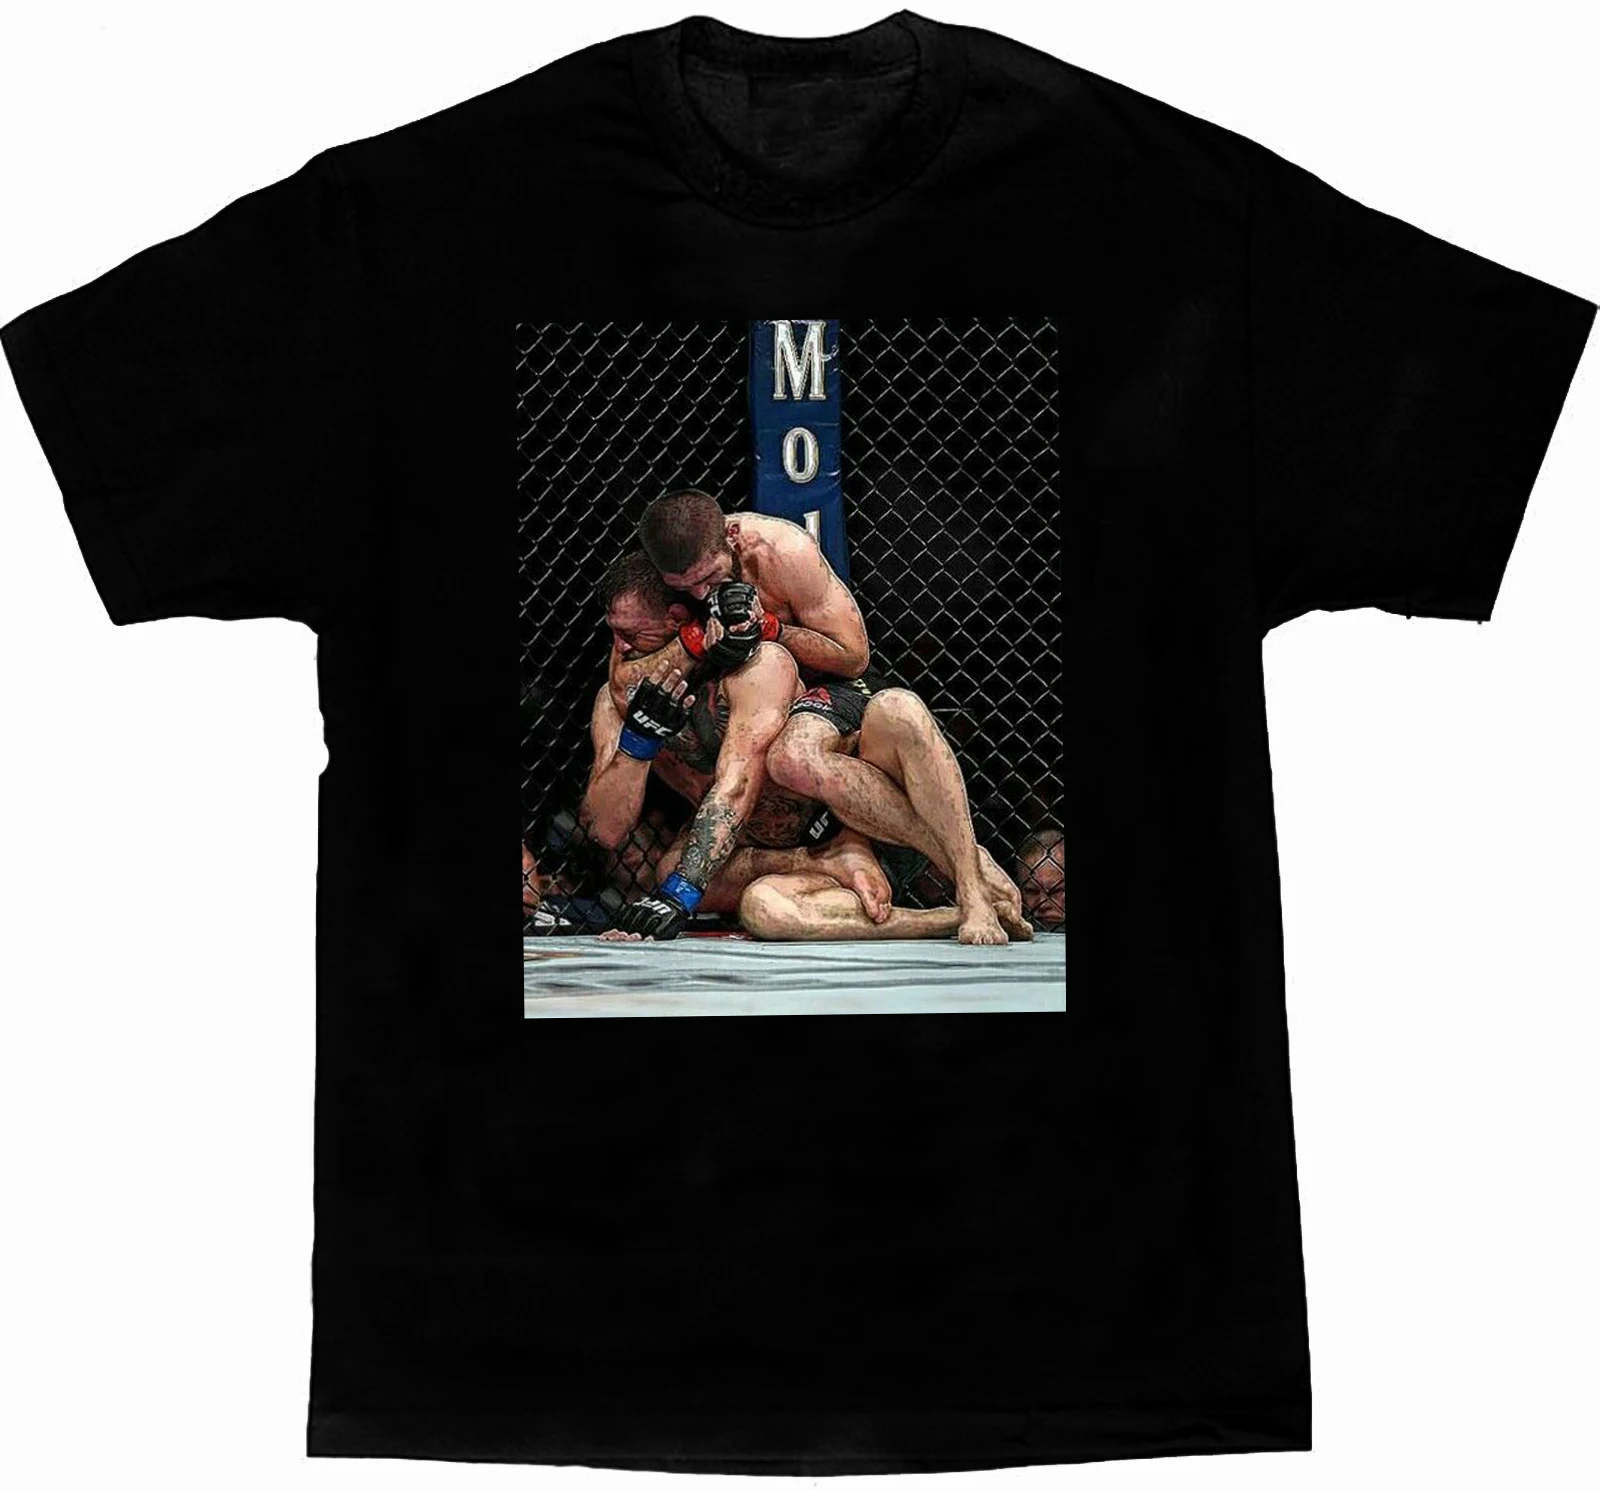 

Khabib Nurmagomedov Vs Conor McGregor Octagon MMA Fight T-Shirt. Summer Cotton Short Sleeve O-Neck Mens T Shirt New S-3XL